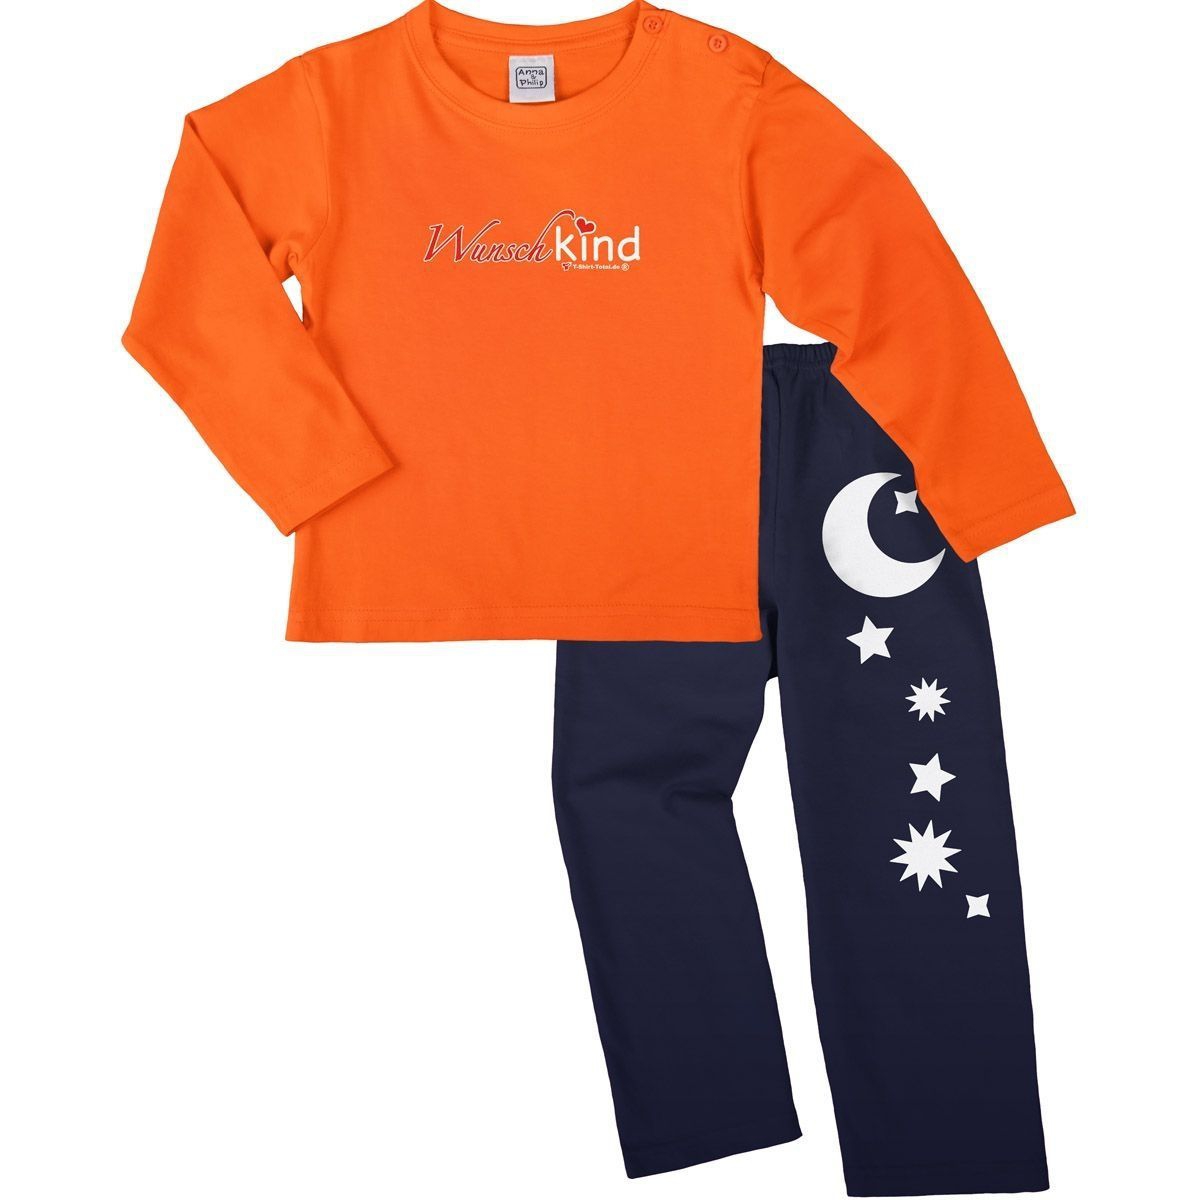 Wunschkind Pyjama Set orange / navy 92